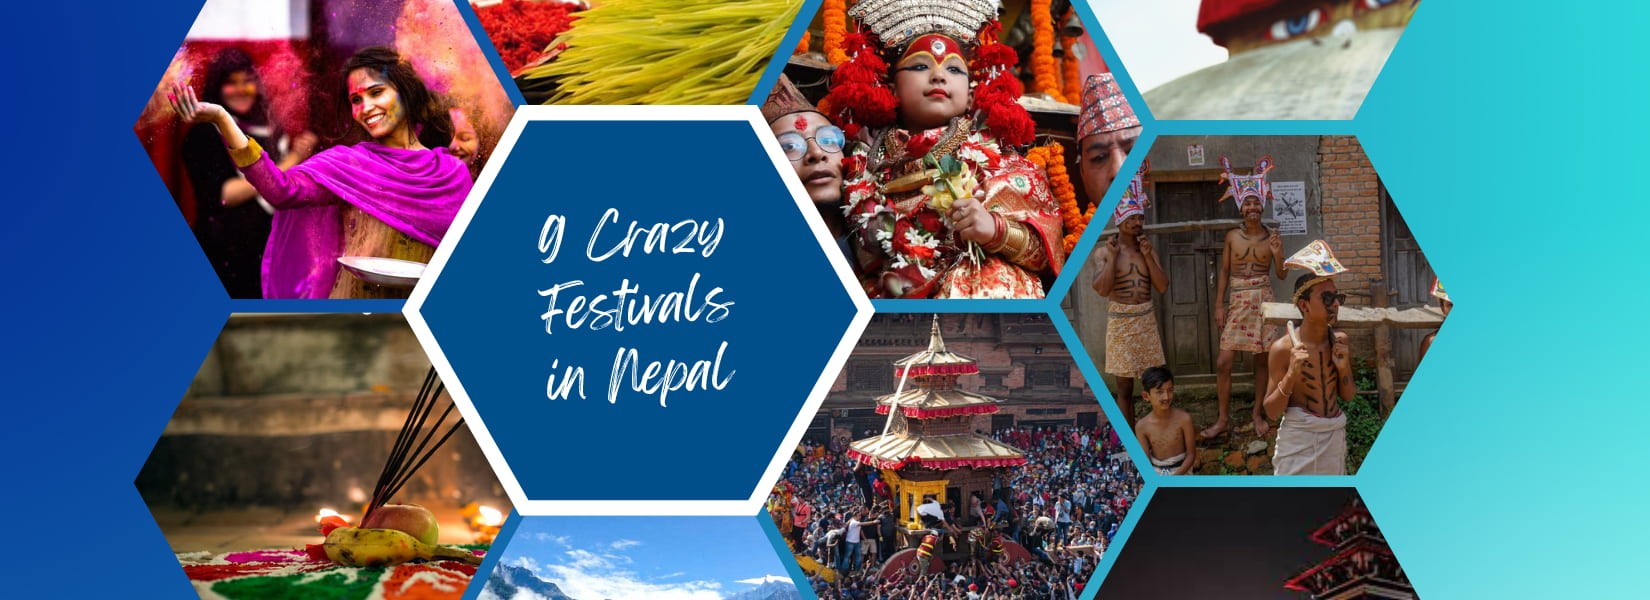 Crazy Festival in Nepal